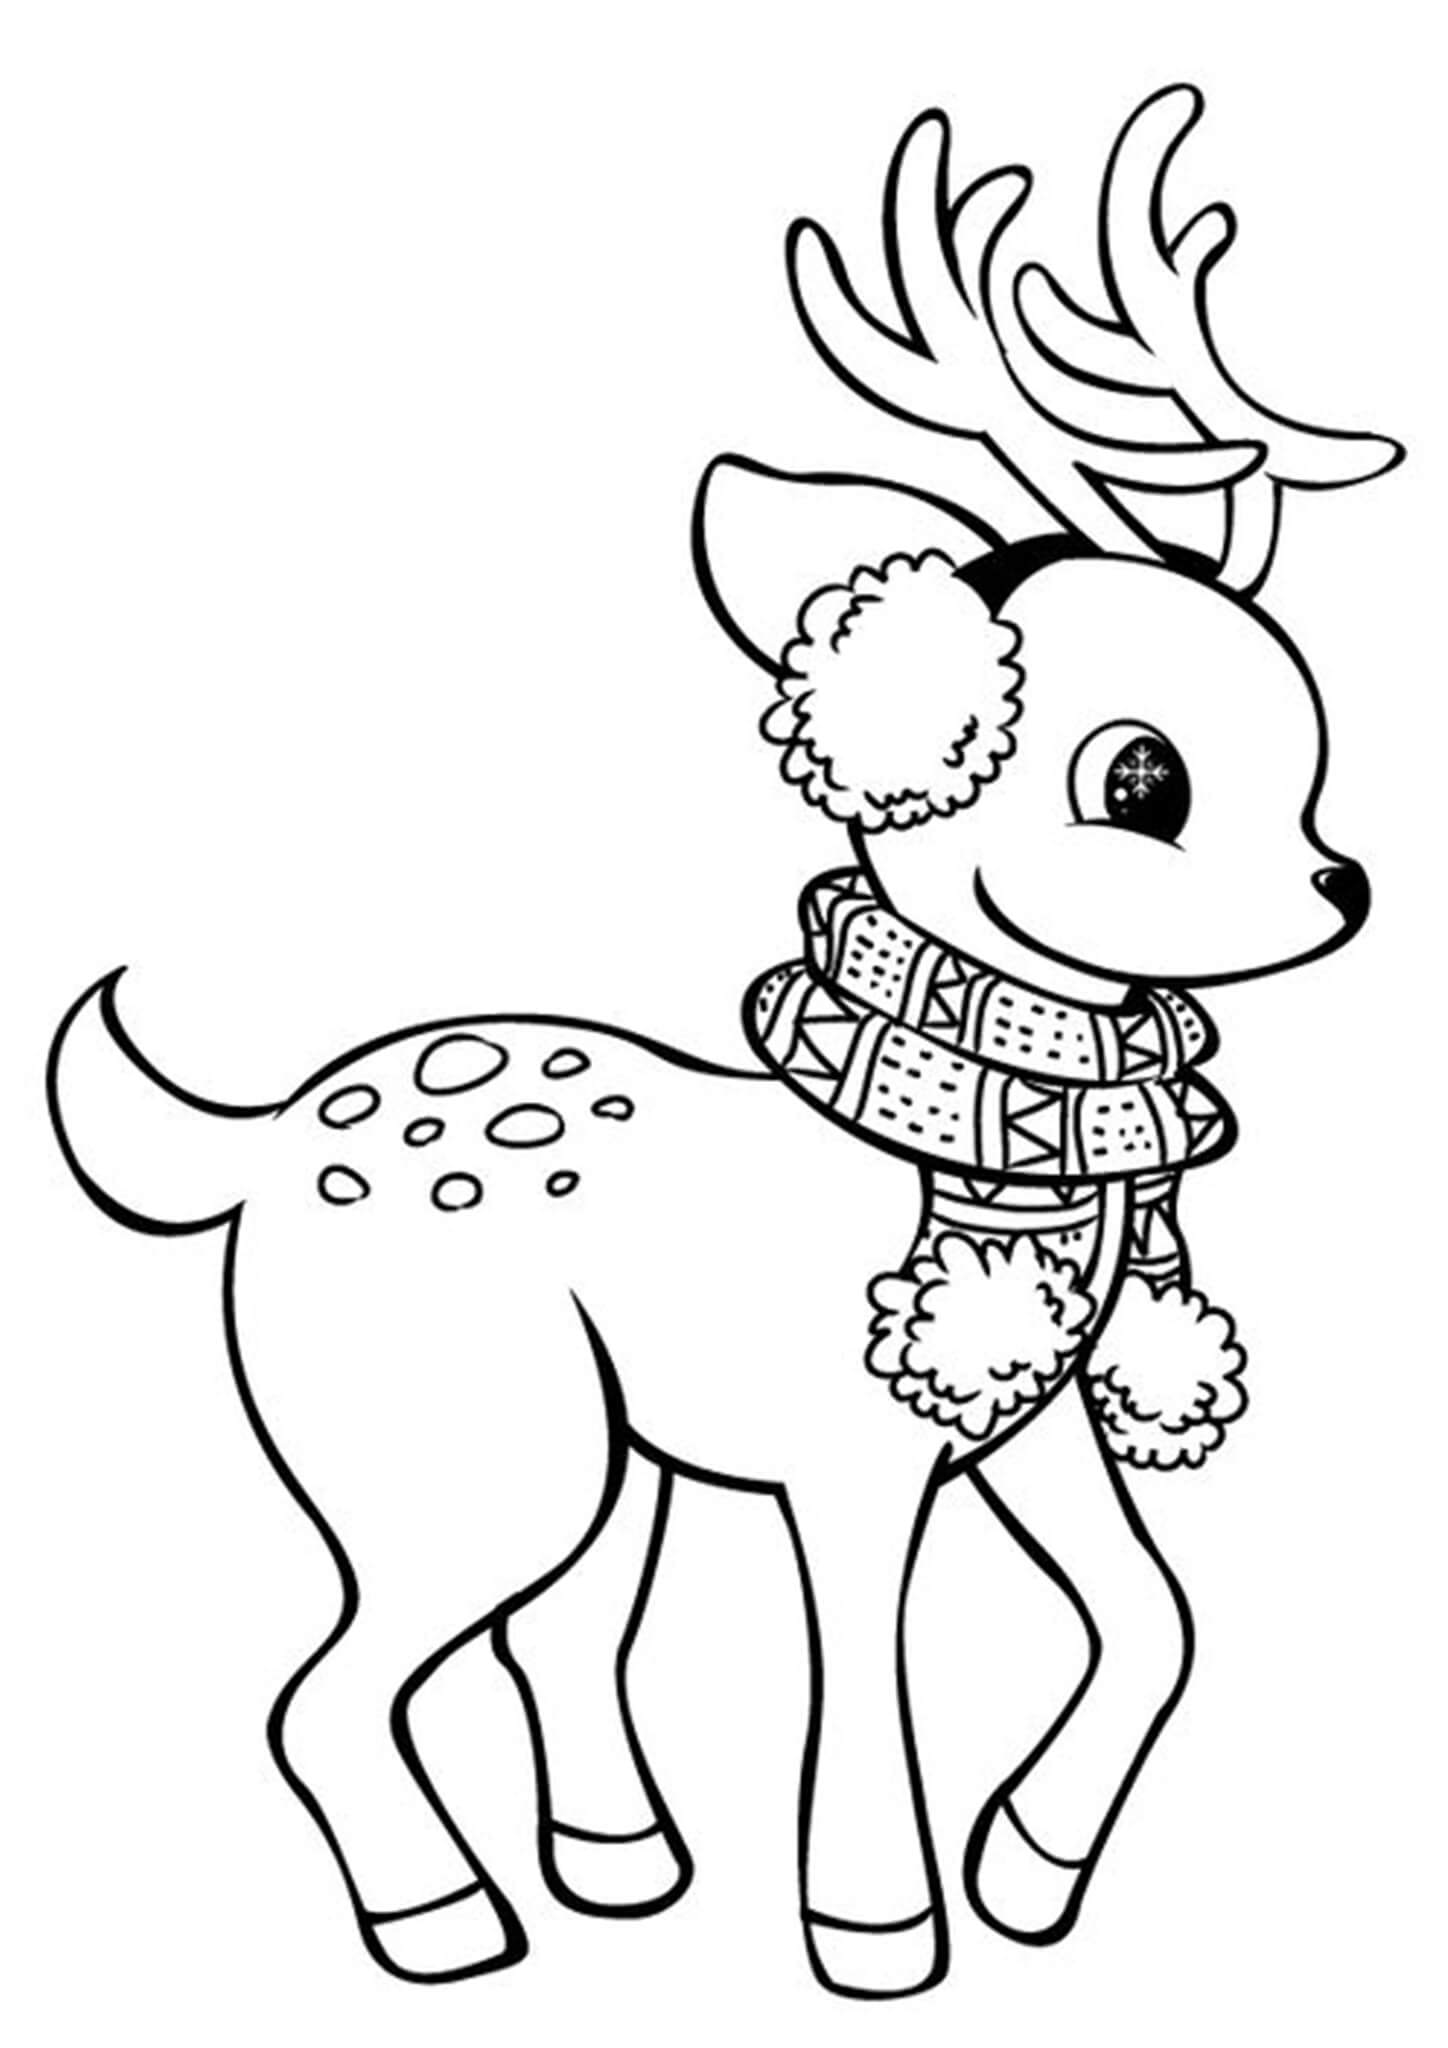 Free Printable Reindeer C
oloring Pages Tulamama